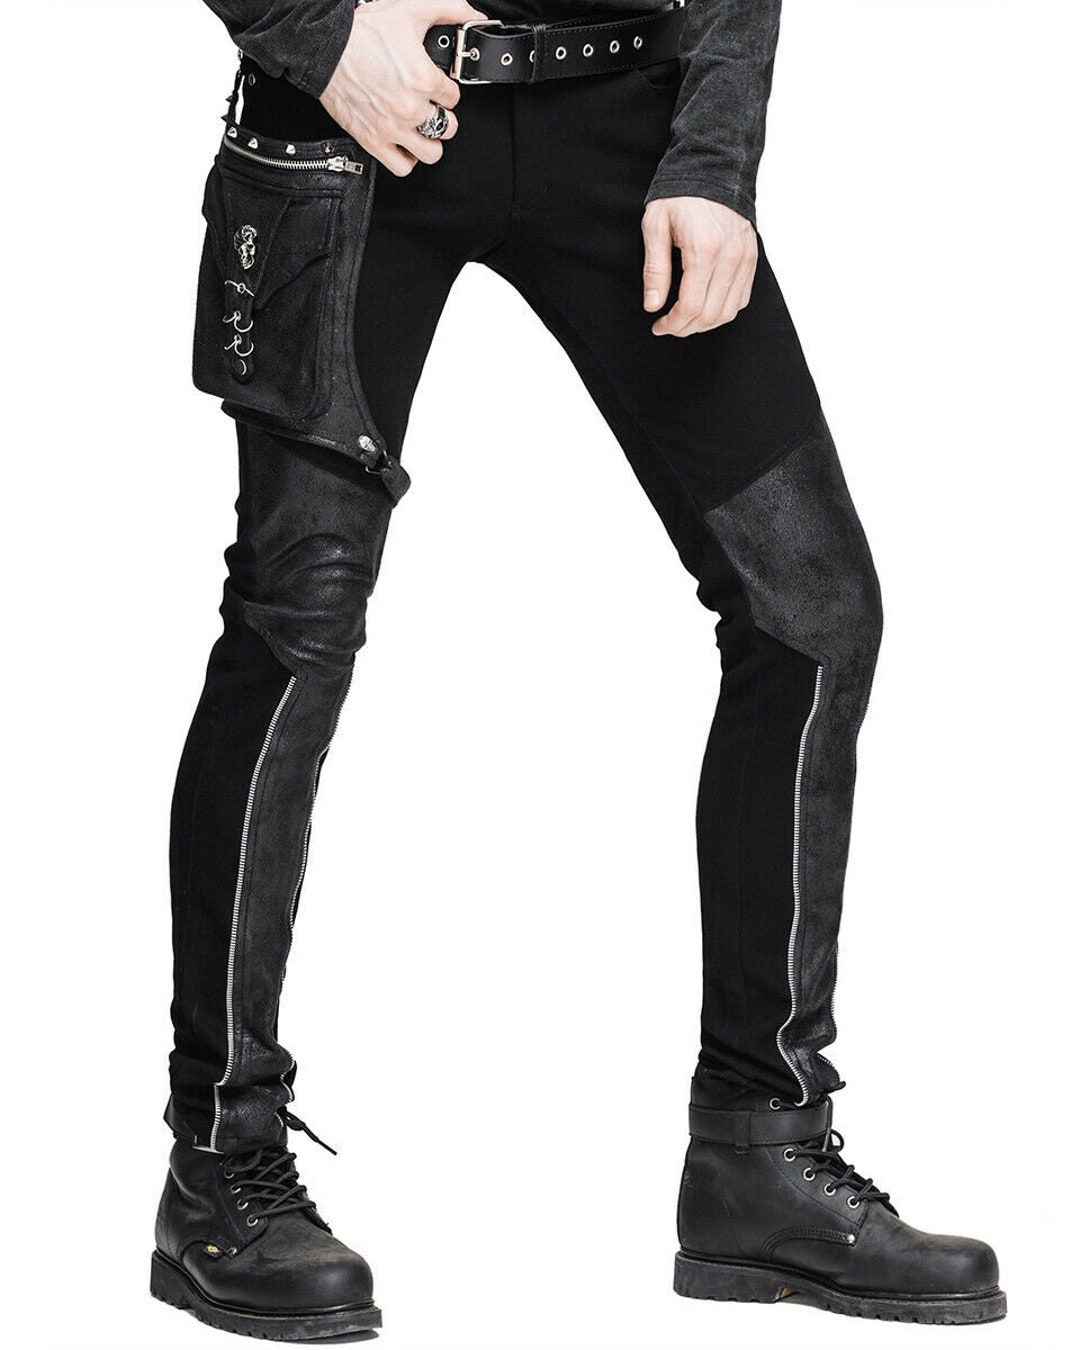 Devil Fashion Men Diesel Punk Pants Jeans Black Gothic Punk Faux